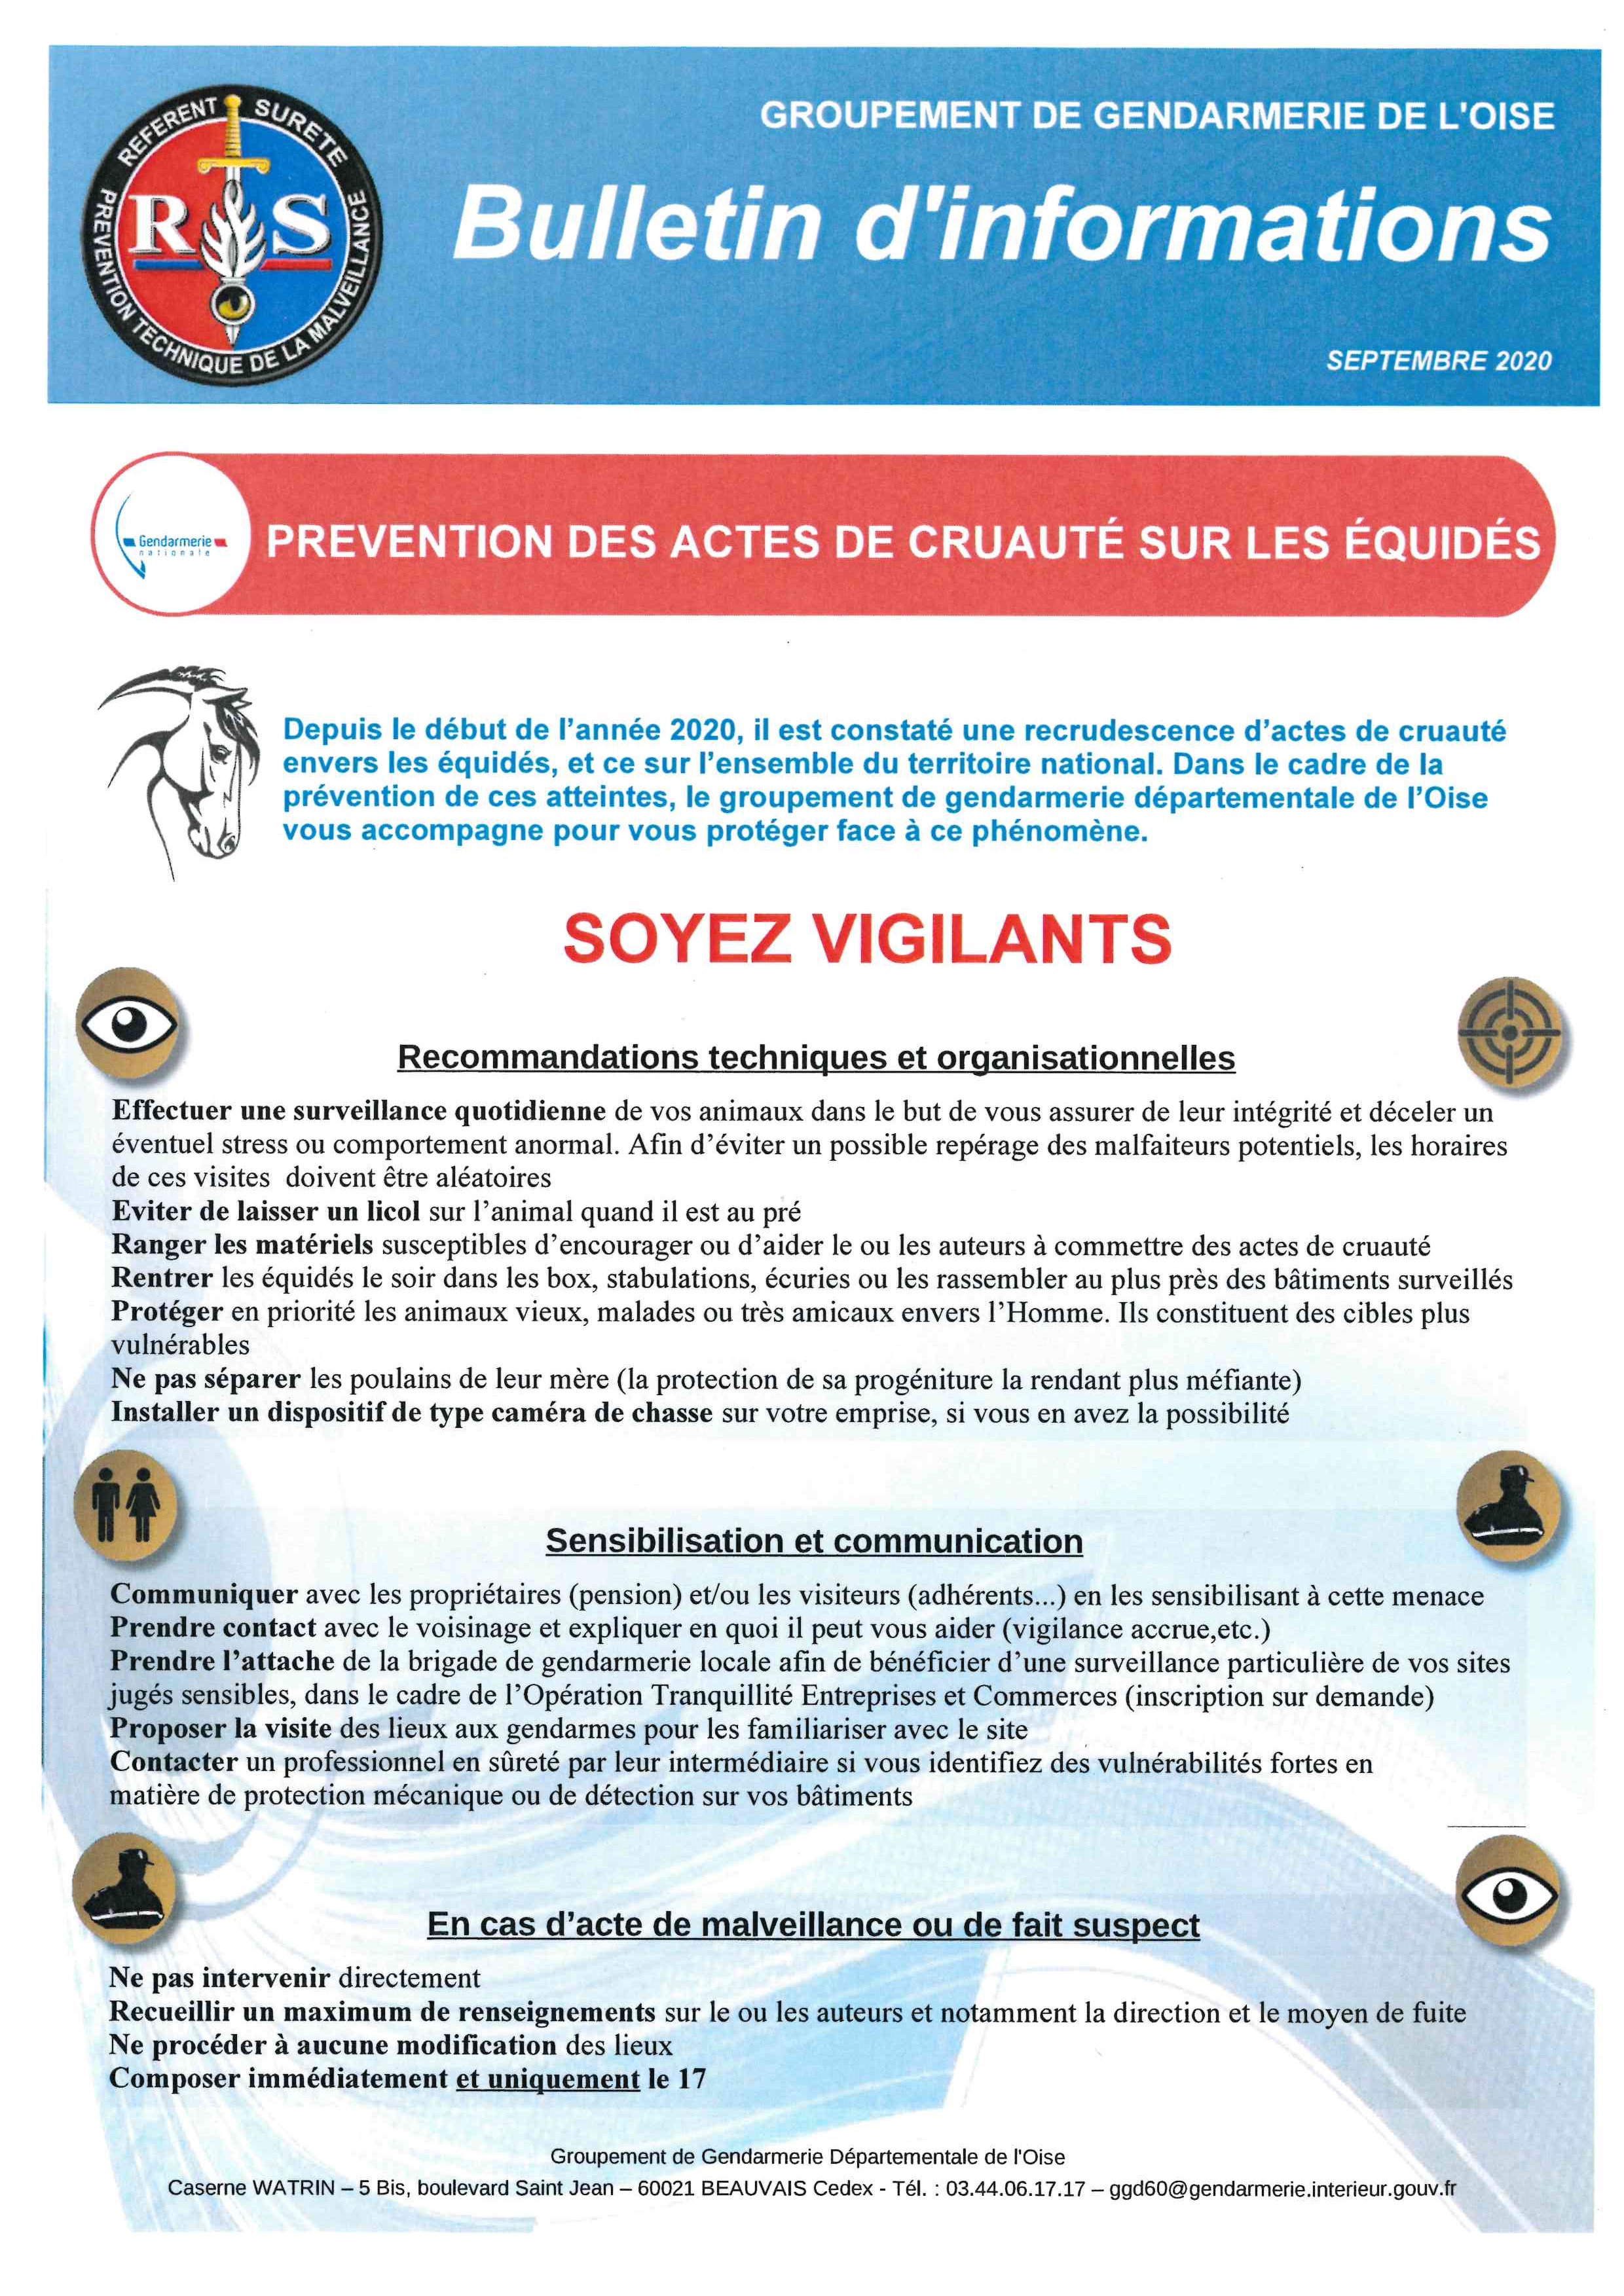 BULLETIN D'INFORMATIONS GENDARMERIE - PREVENTION DES ACTES DE CRUAUTE SUR LES EQUIPES